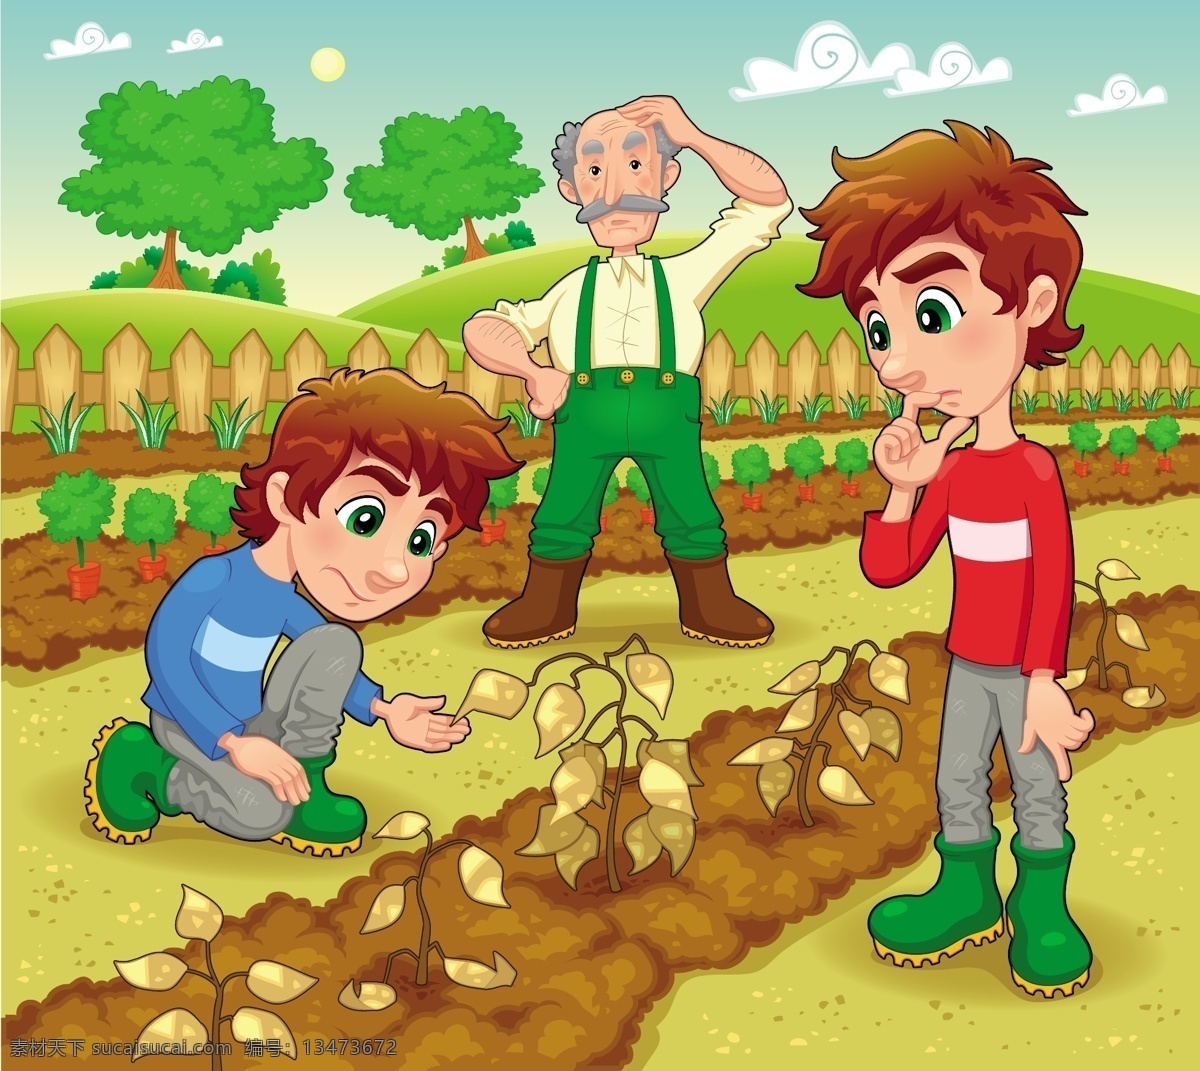 查看 植物 农民 卡通画 查看植物 老人 绿树 草地 篱笆 男孩 卡通形象 矢量人物 矢量素材 黄色